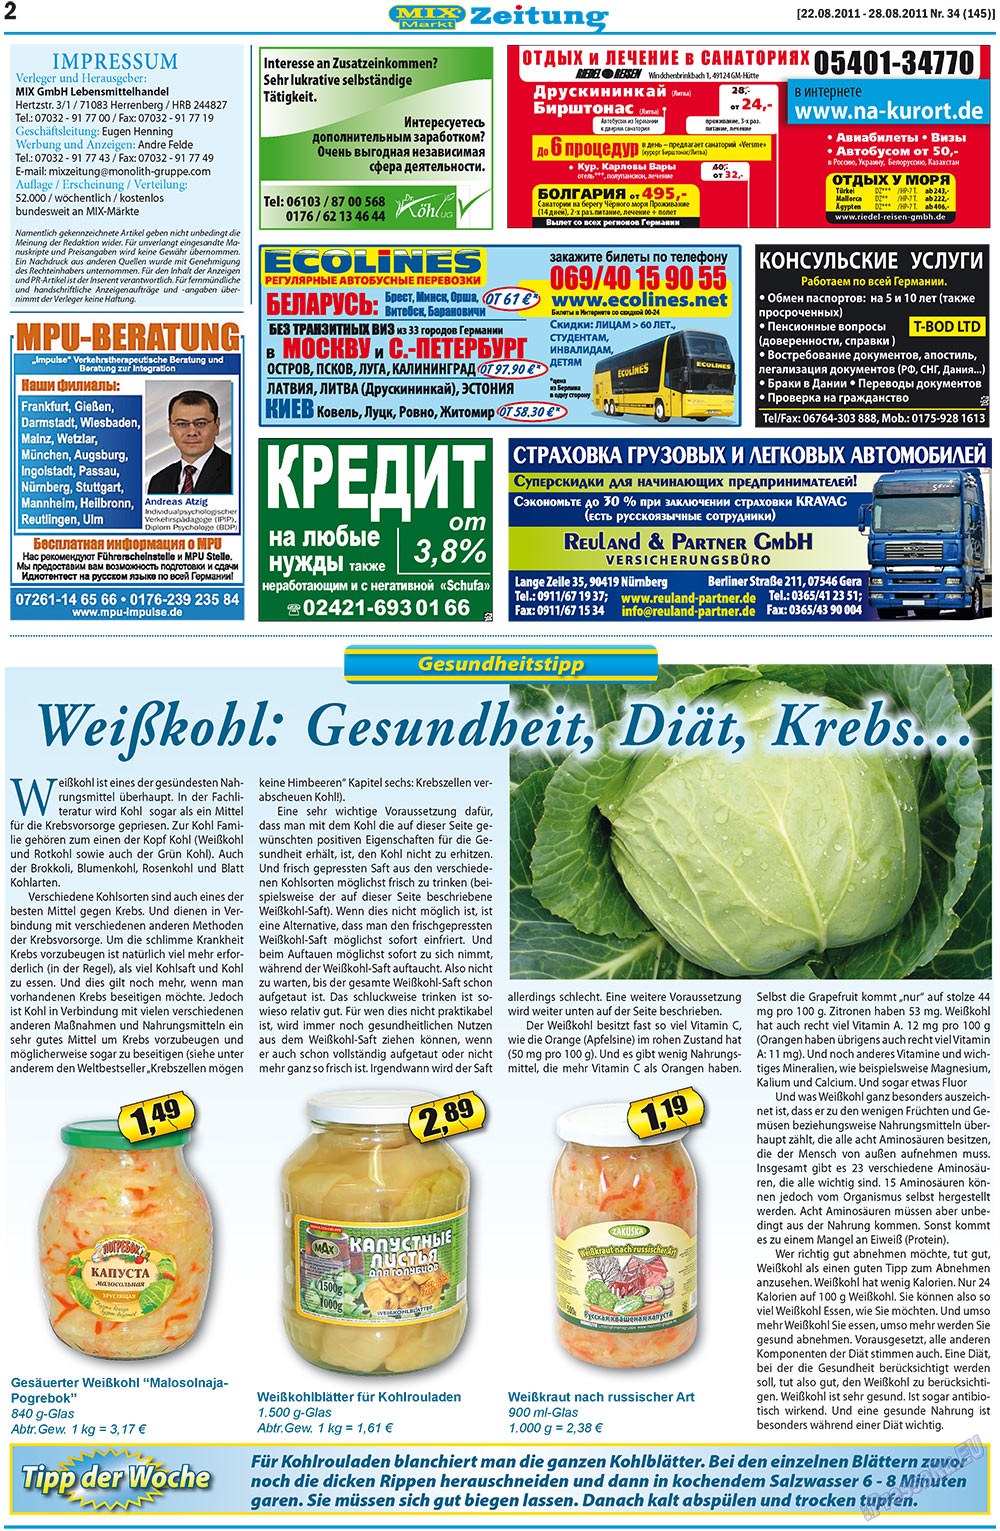 MIX-Markt Zeitung (газета). 2011 год, номер 34, стр. 2